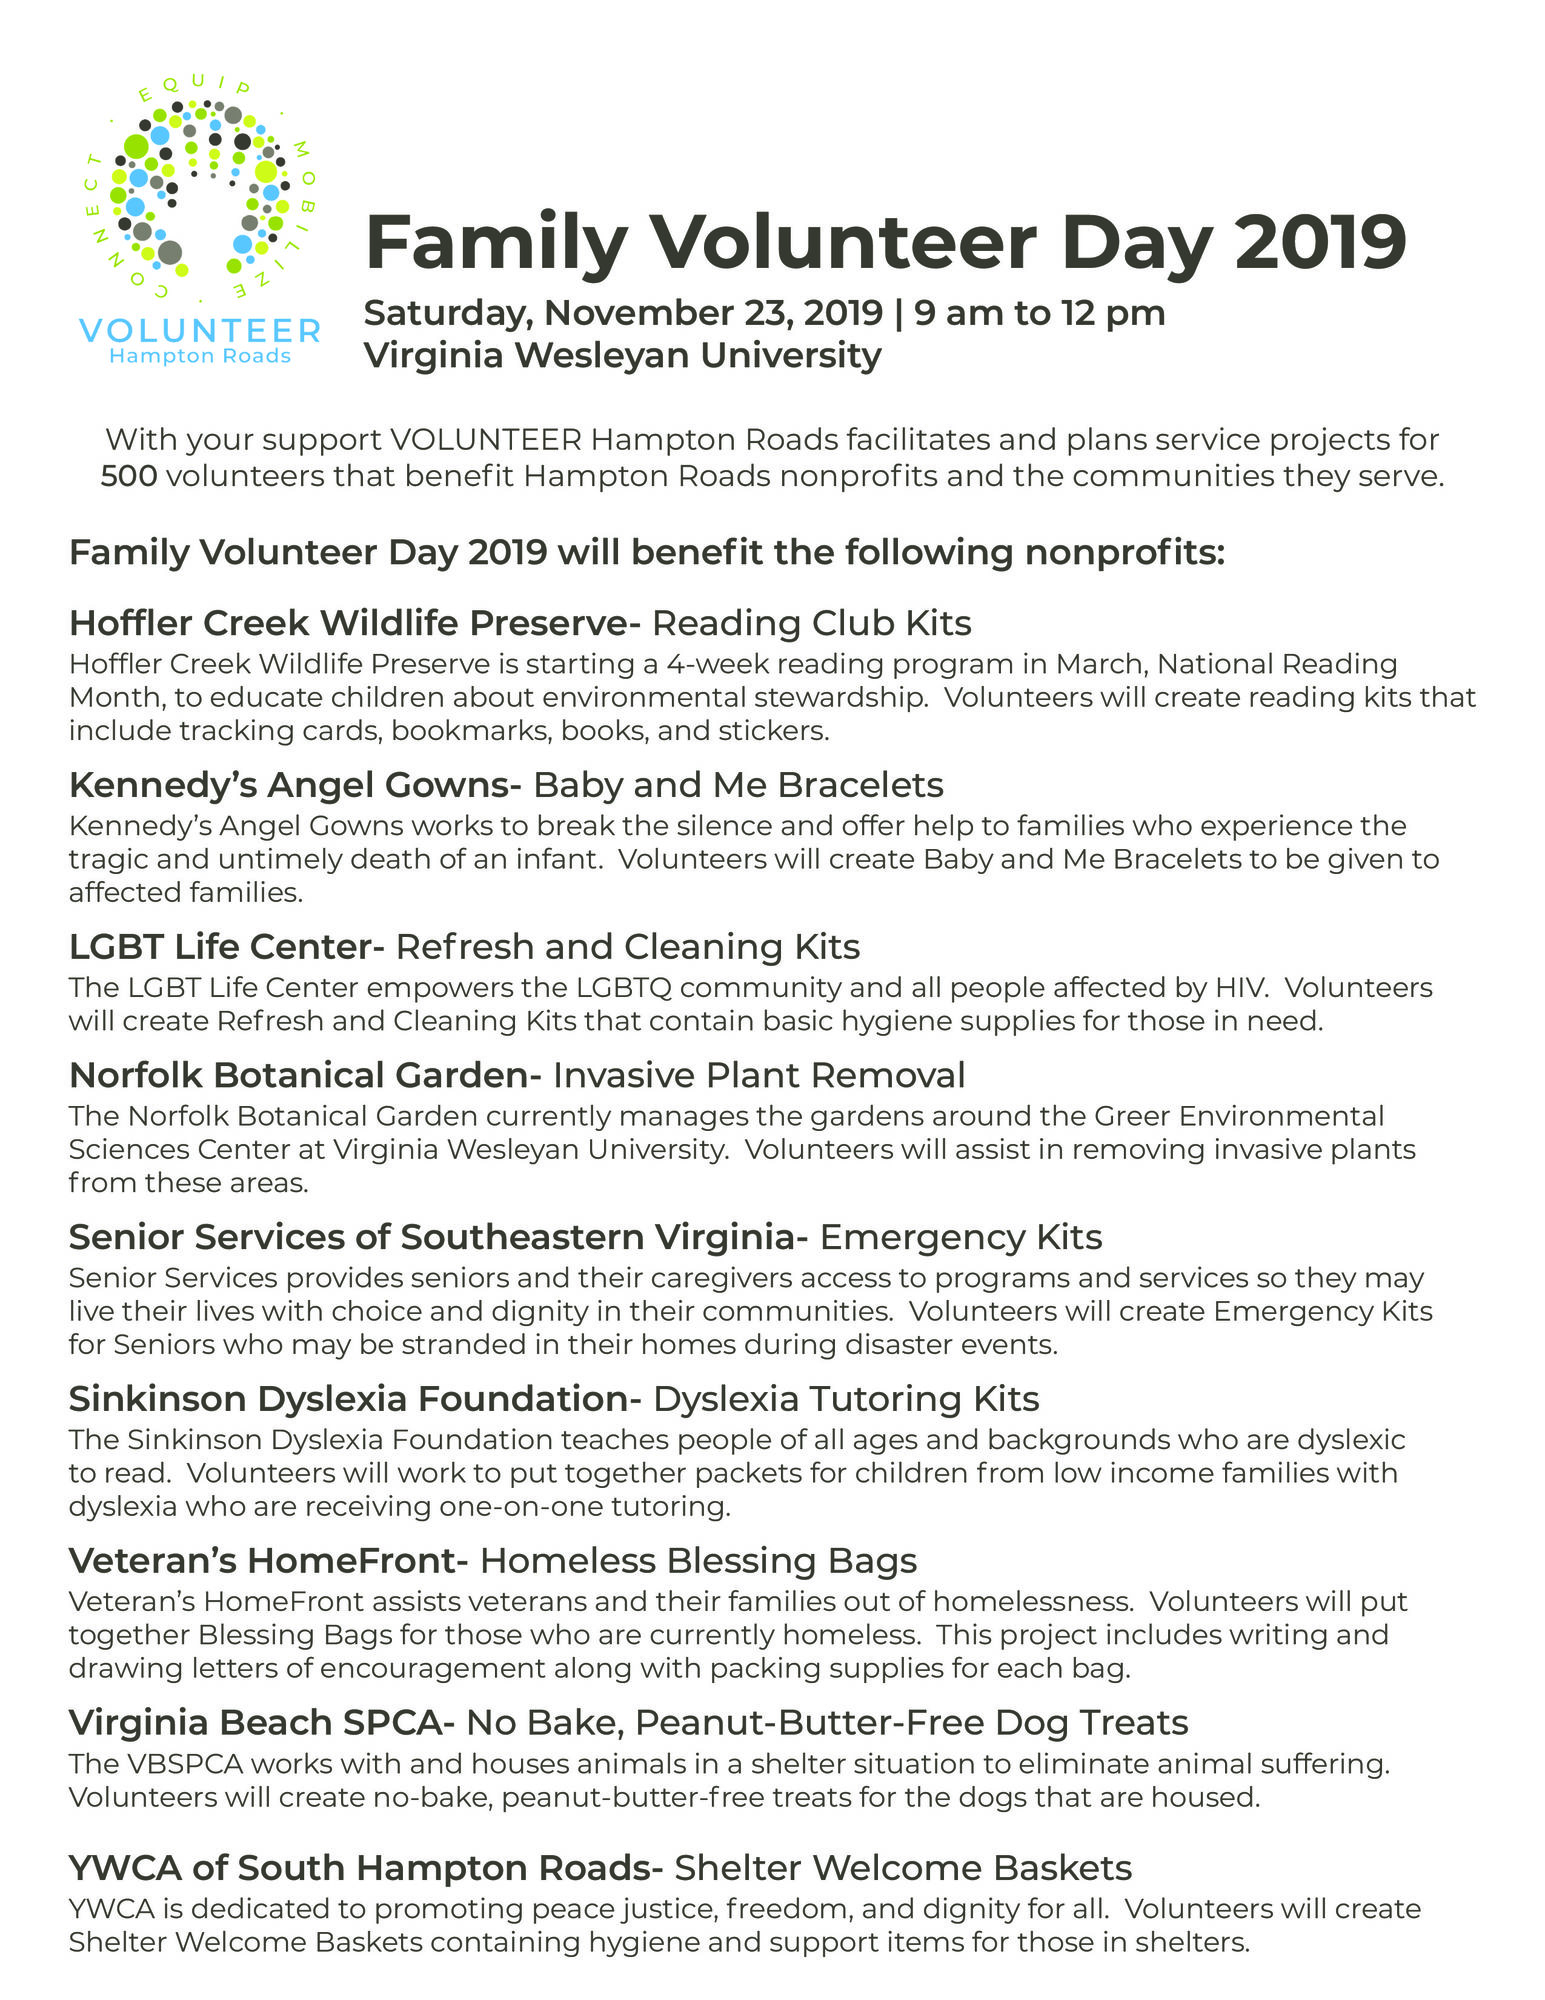 Volunteer Hampton Roads Family Volunteer Day 2019